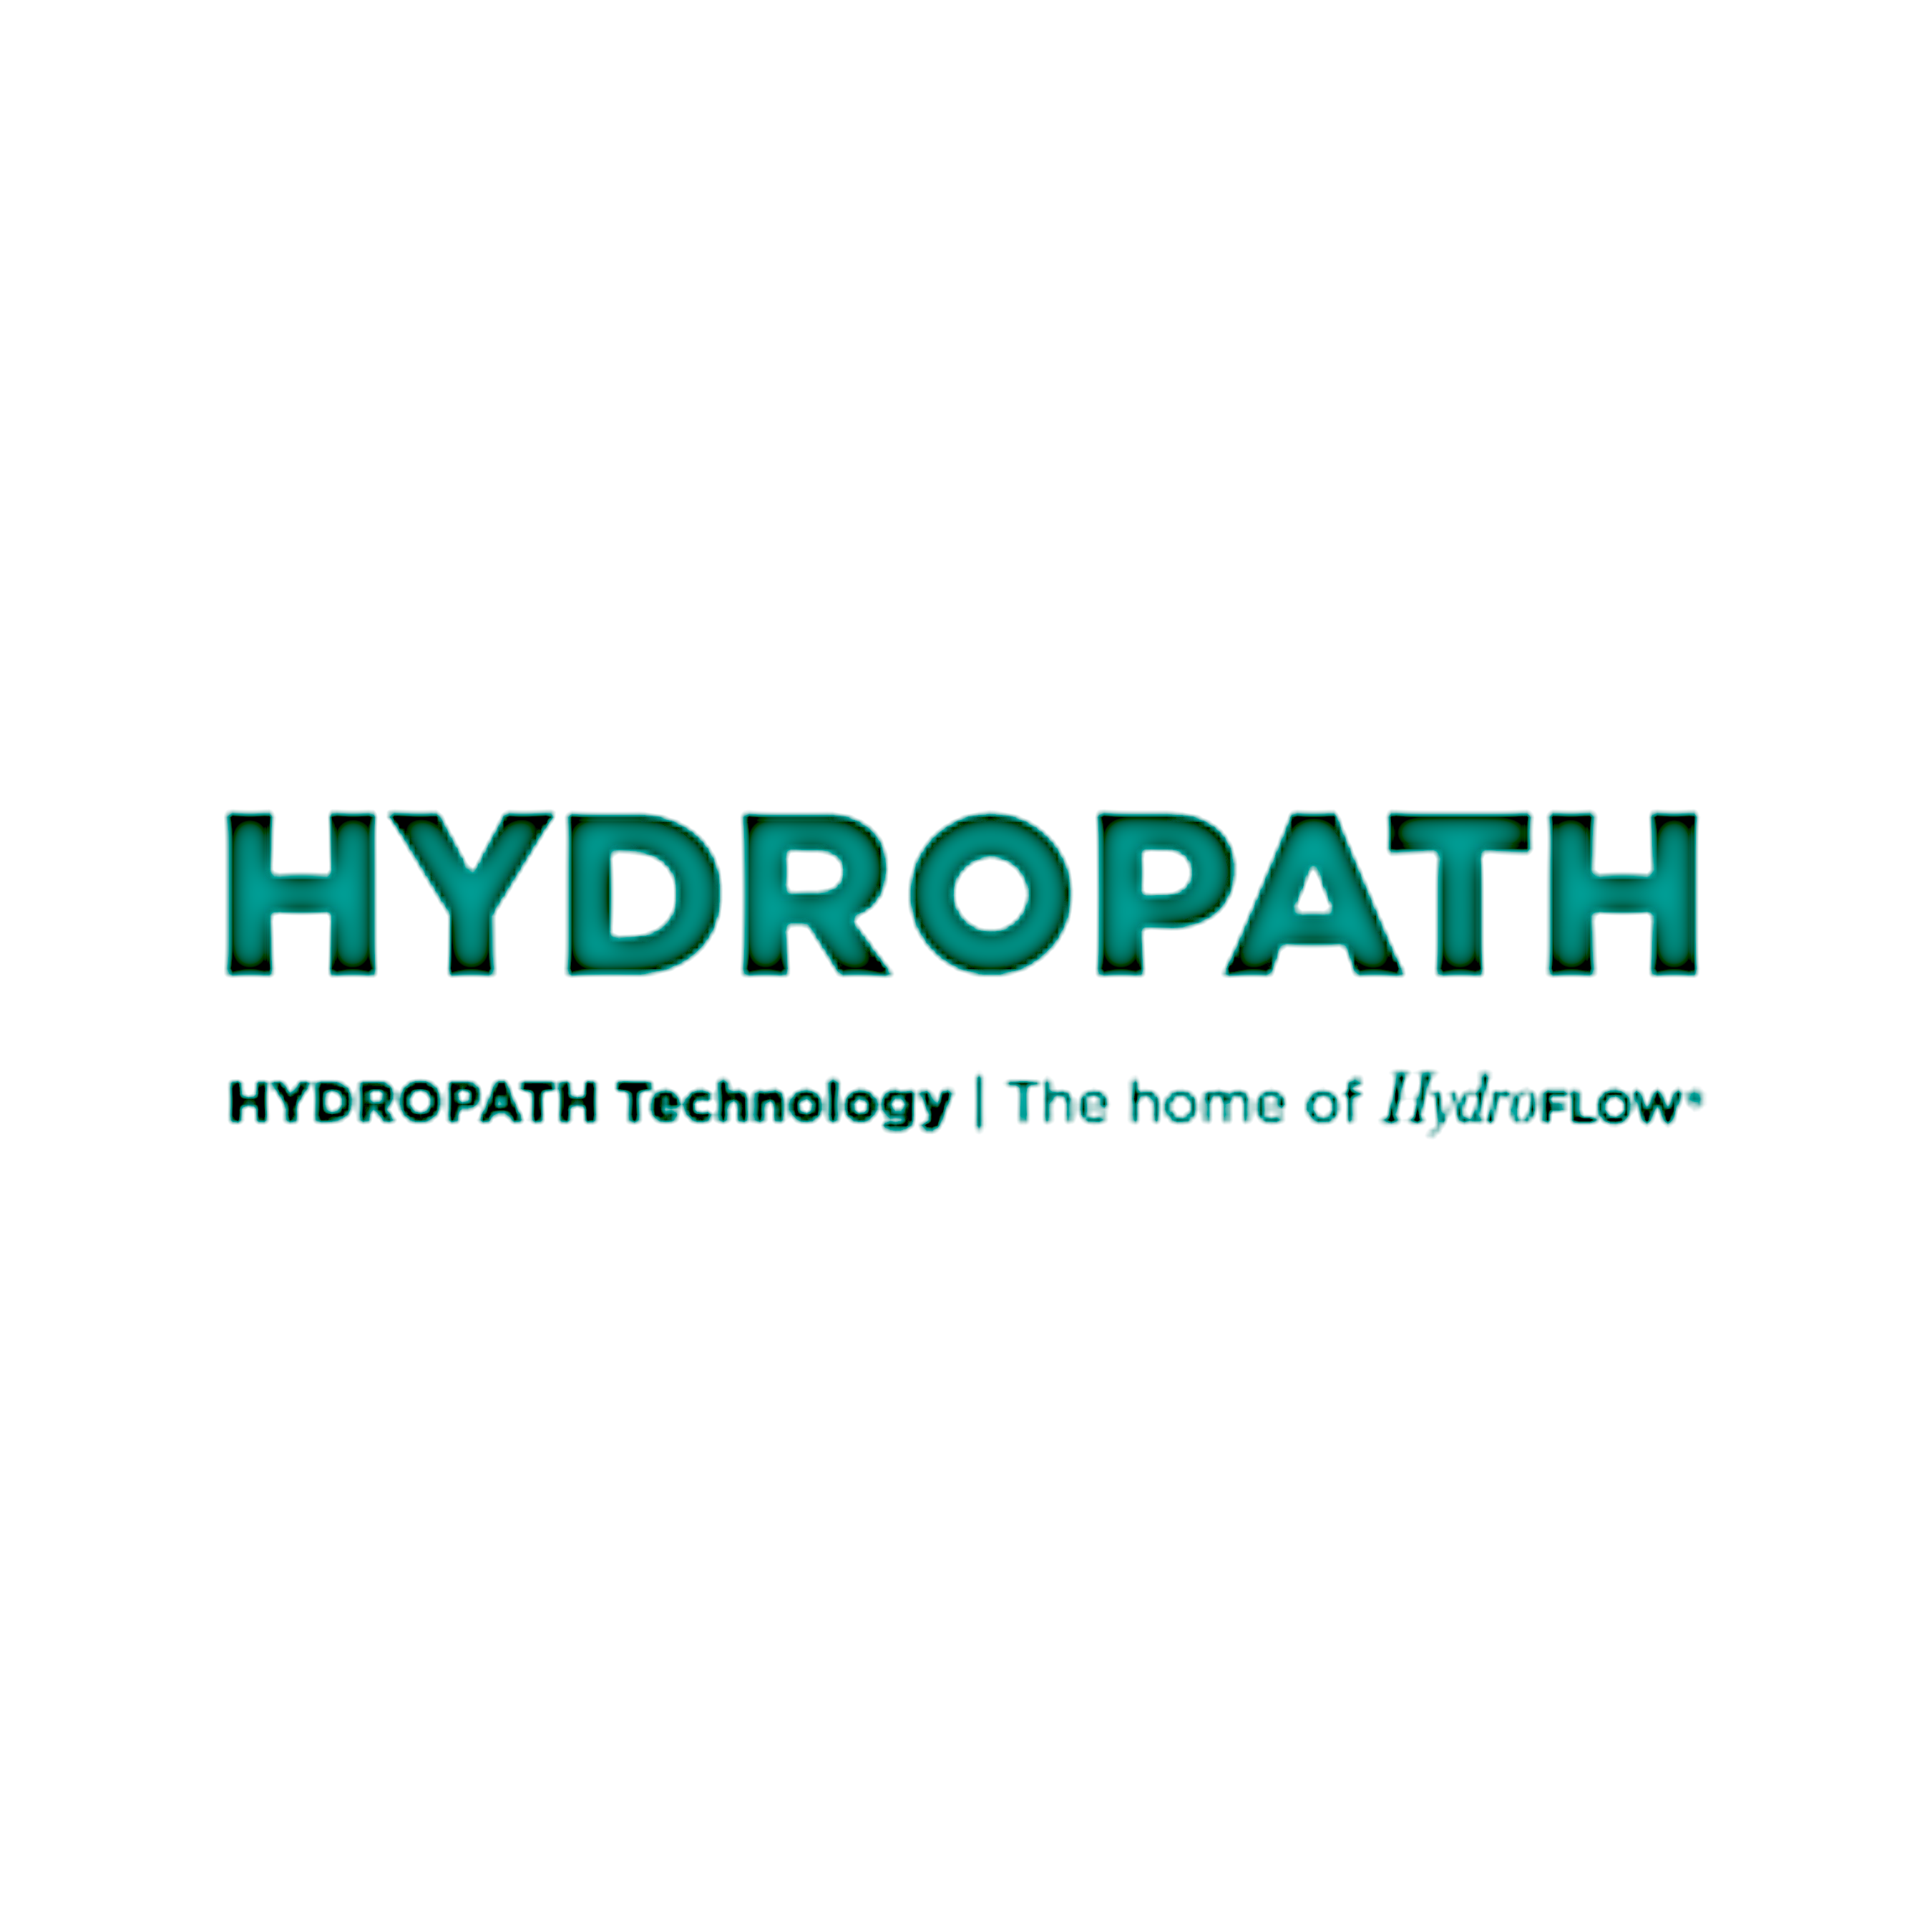 Hydropath